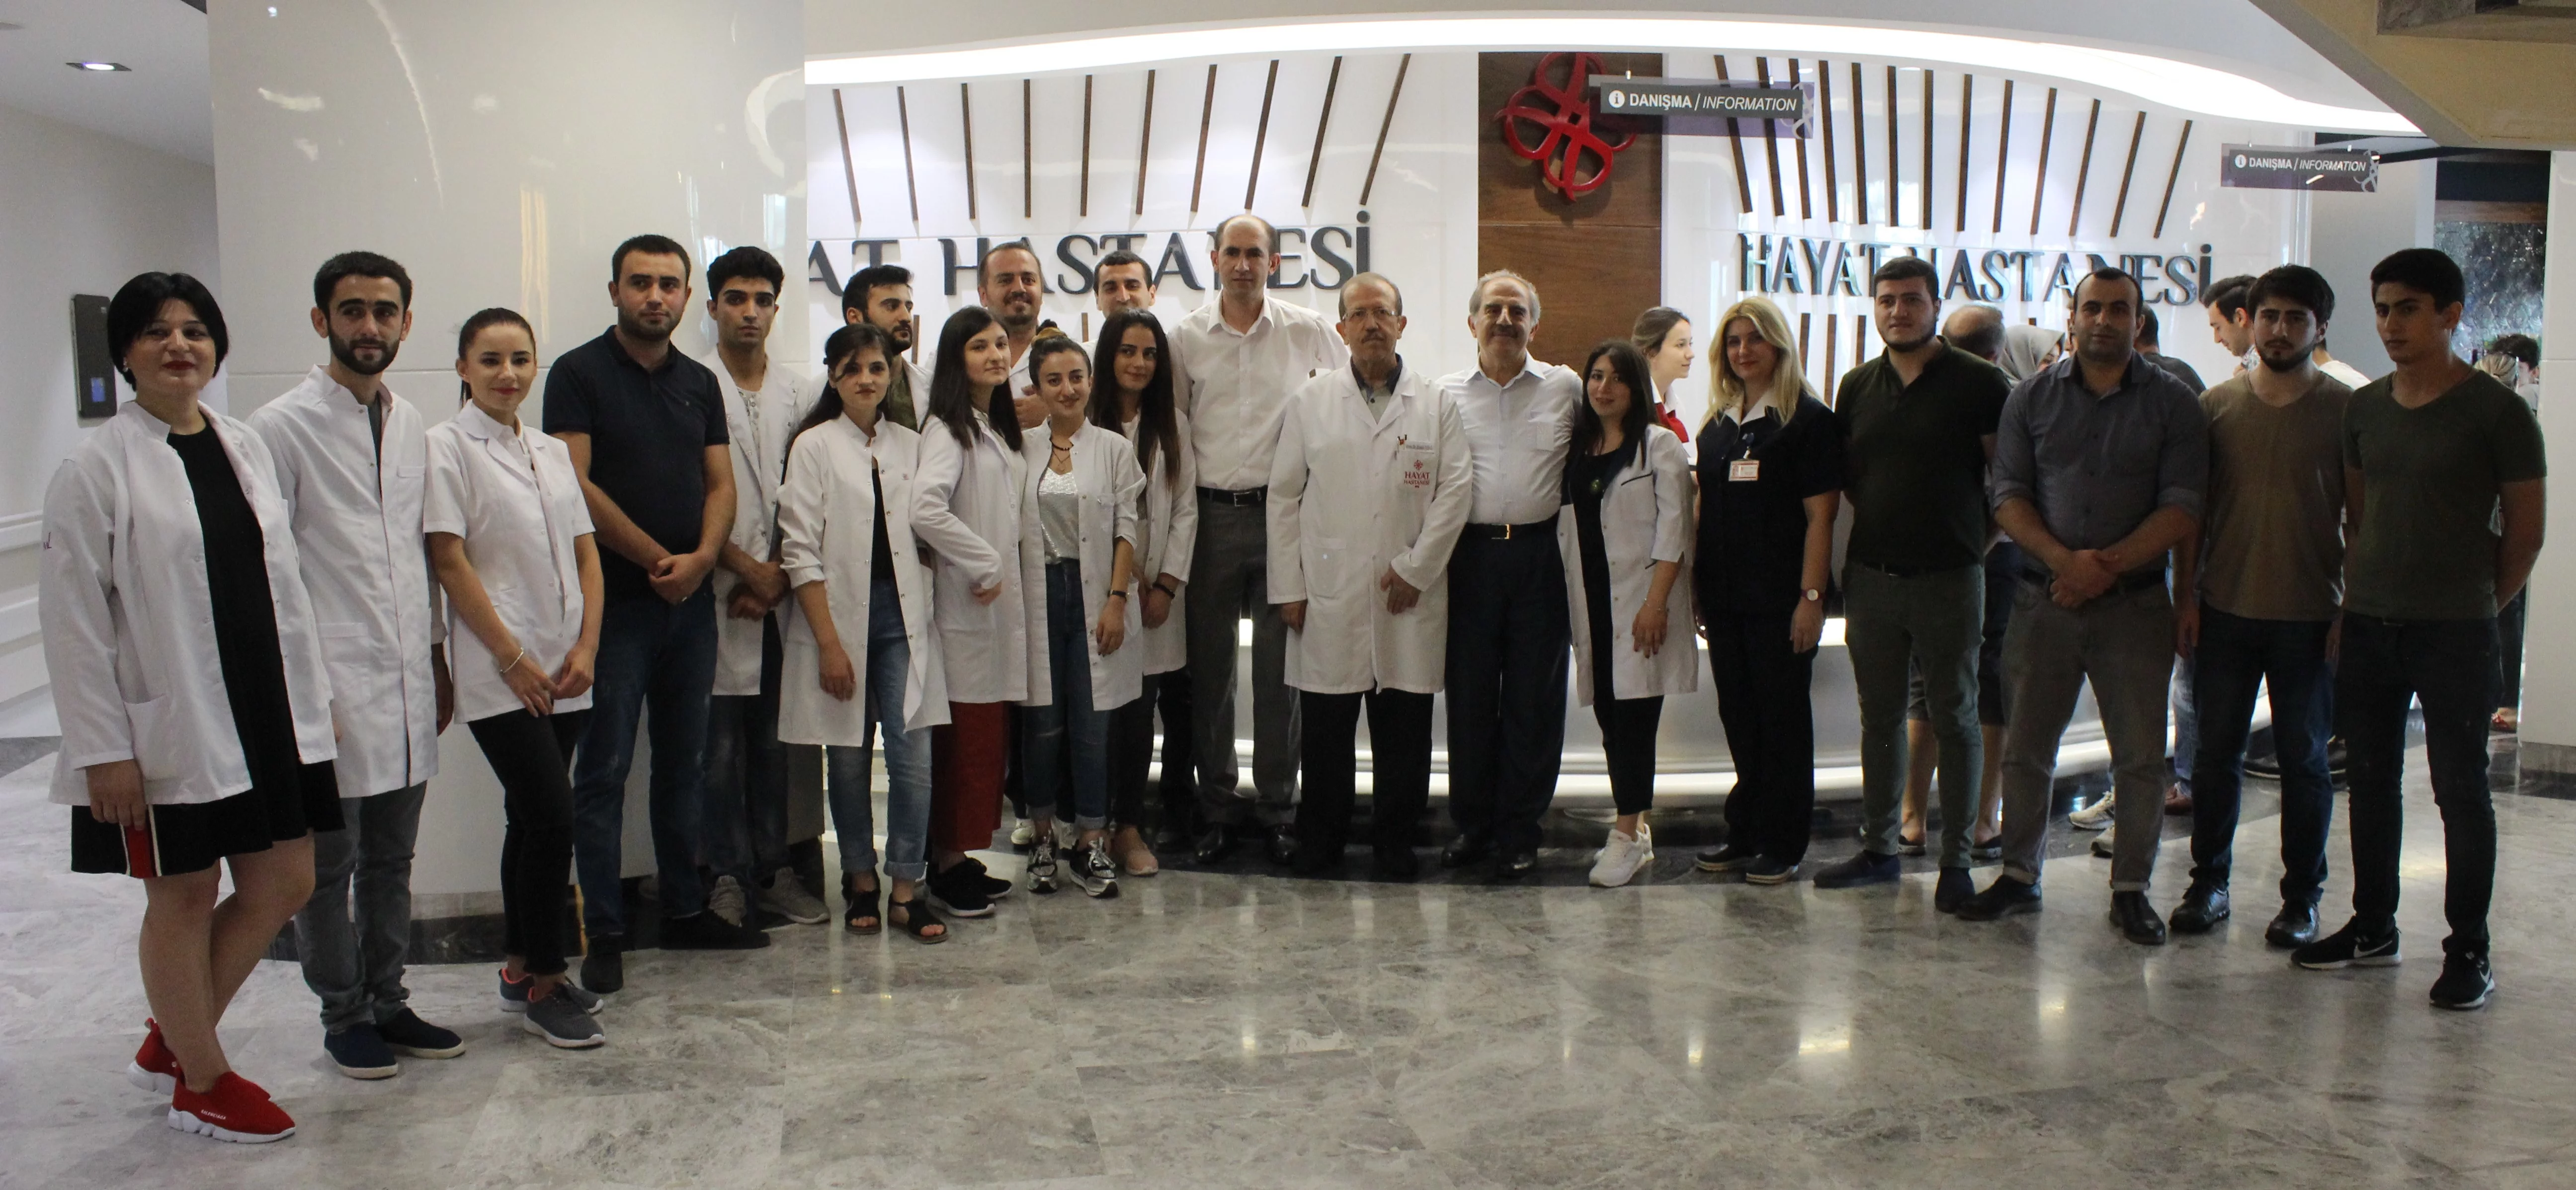 Gürcistanlı tıp öğrencileri, staj için geldikleri Hayat Hastanesi'ne hayran kaldı